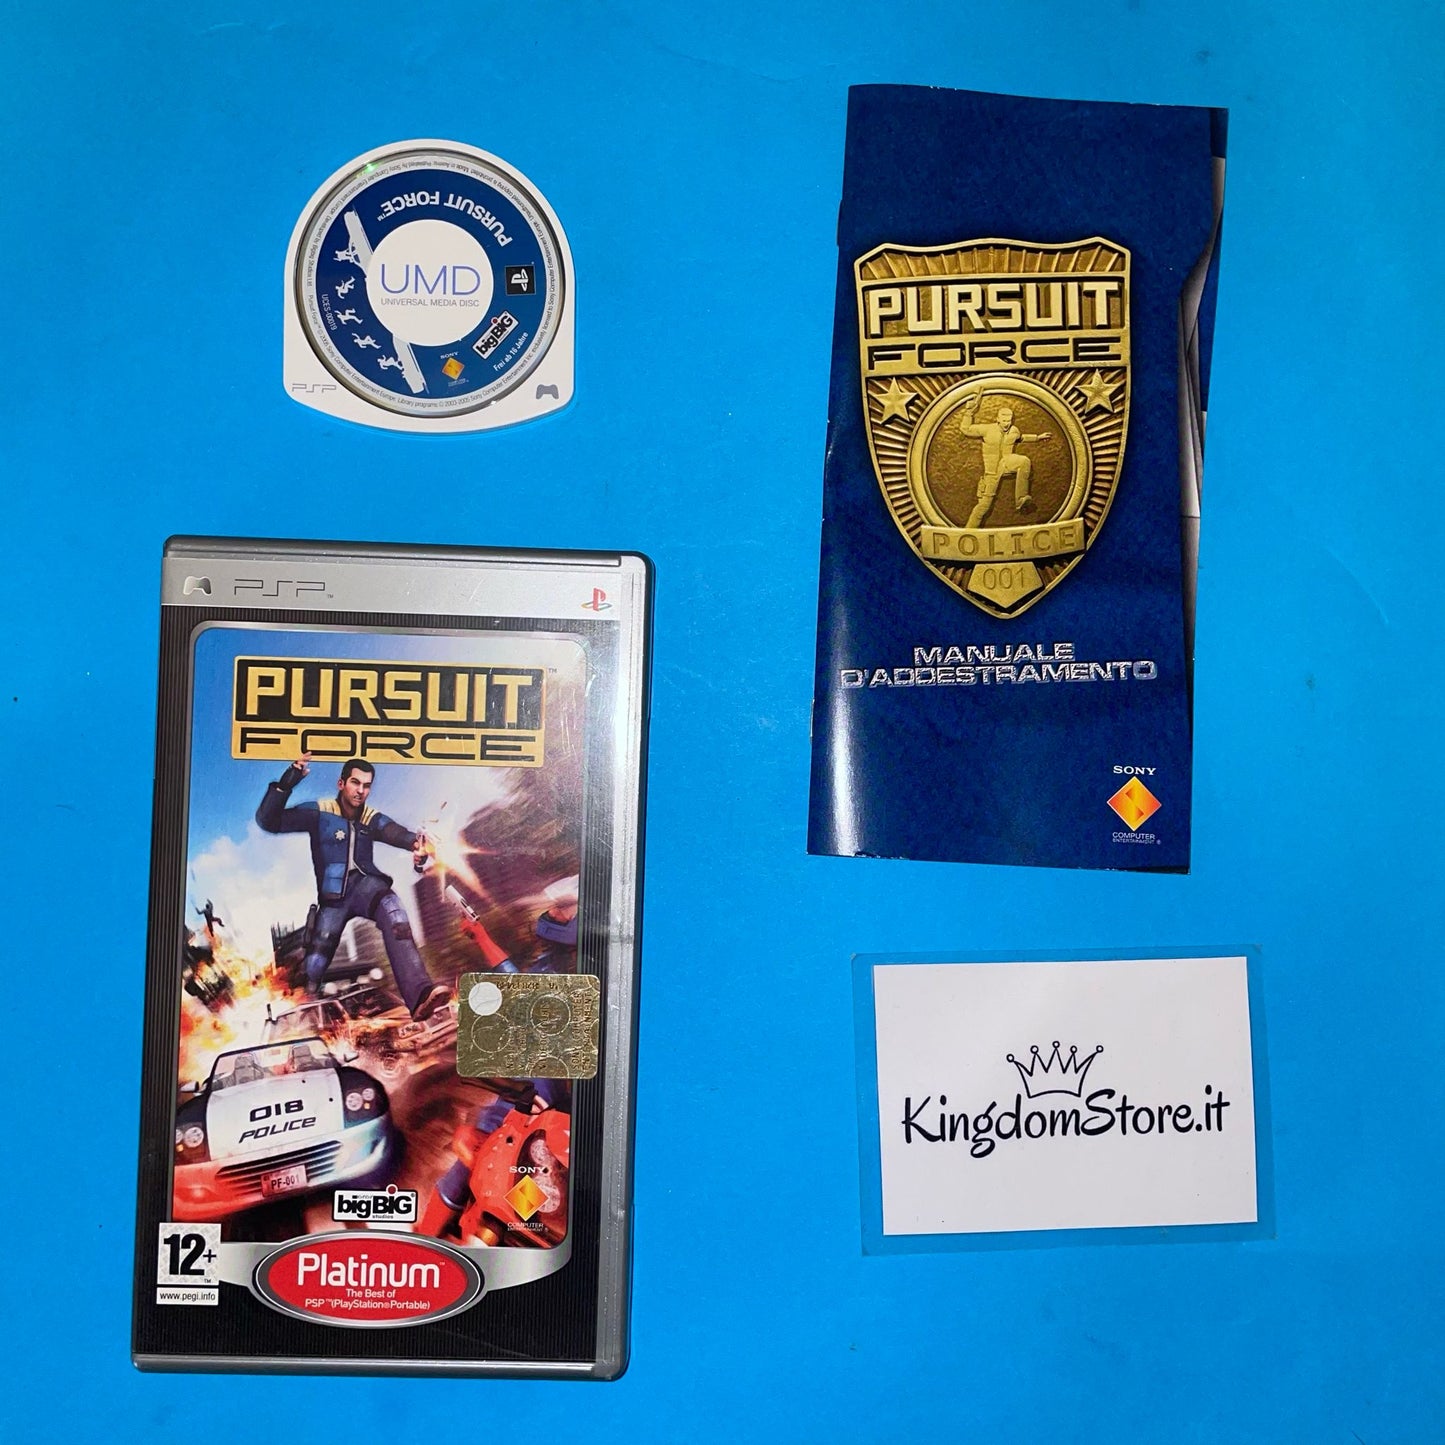 Pursuit Force - Playstation Portable PSP - Platinum